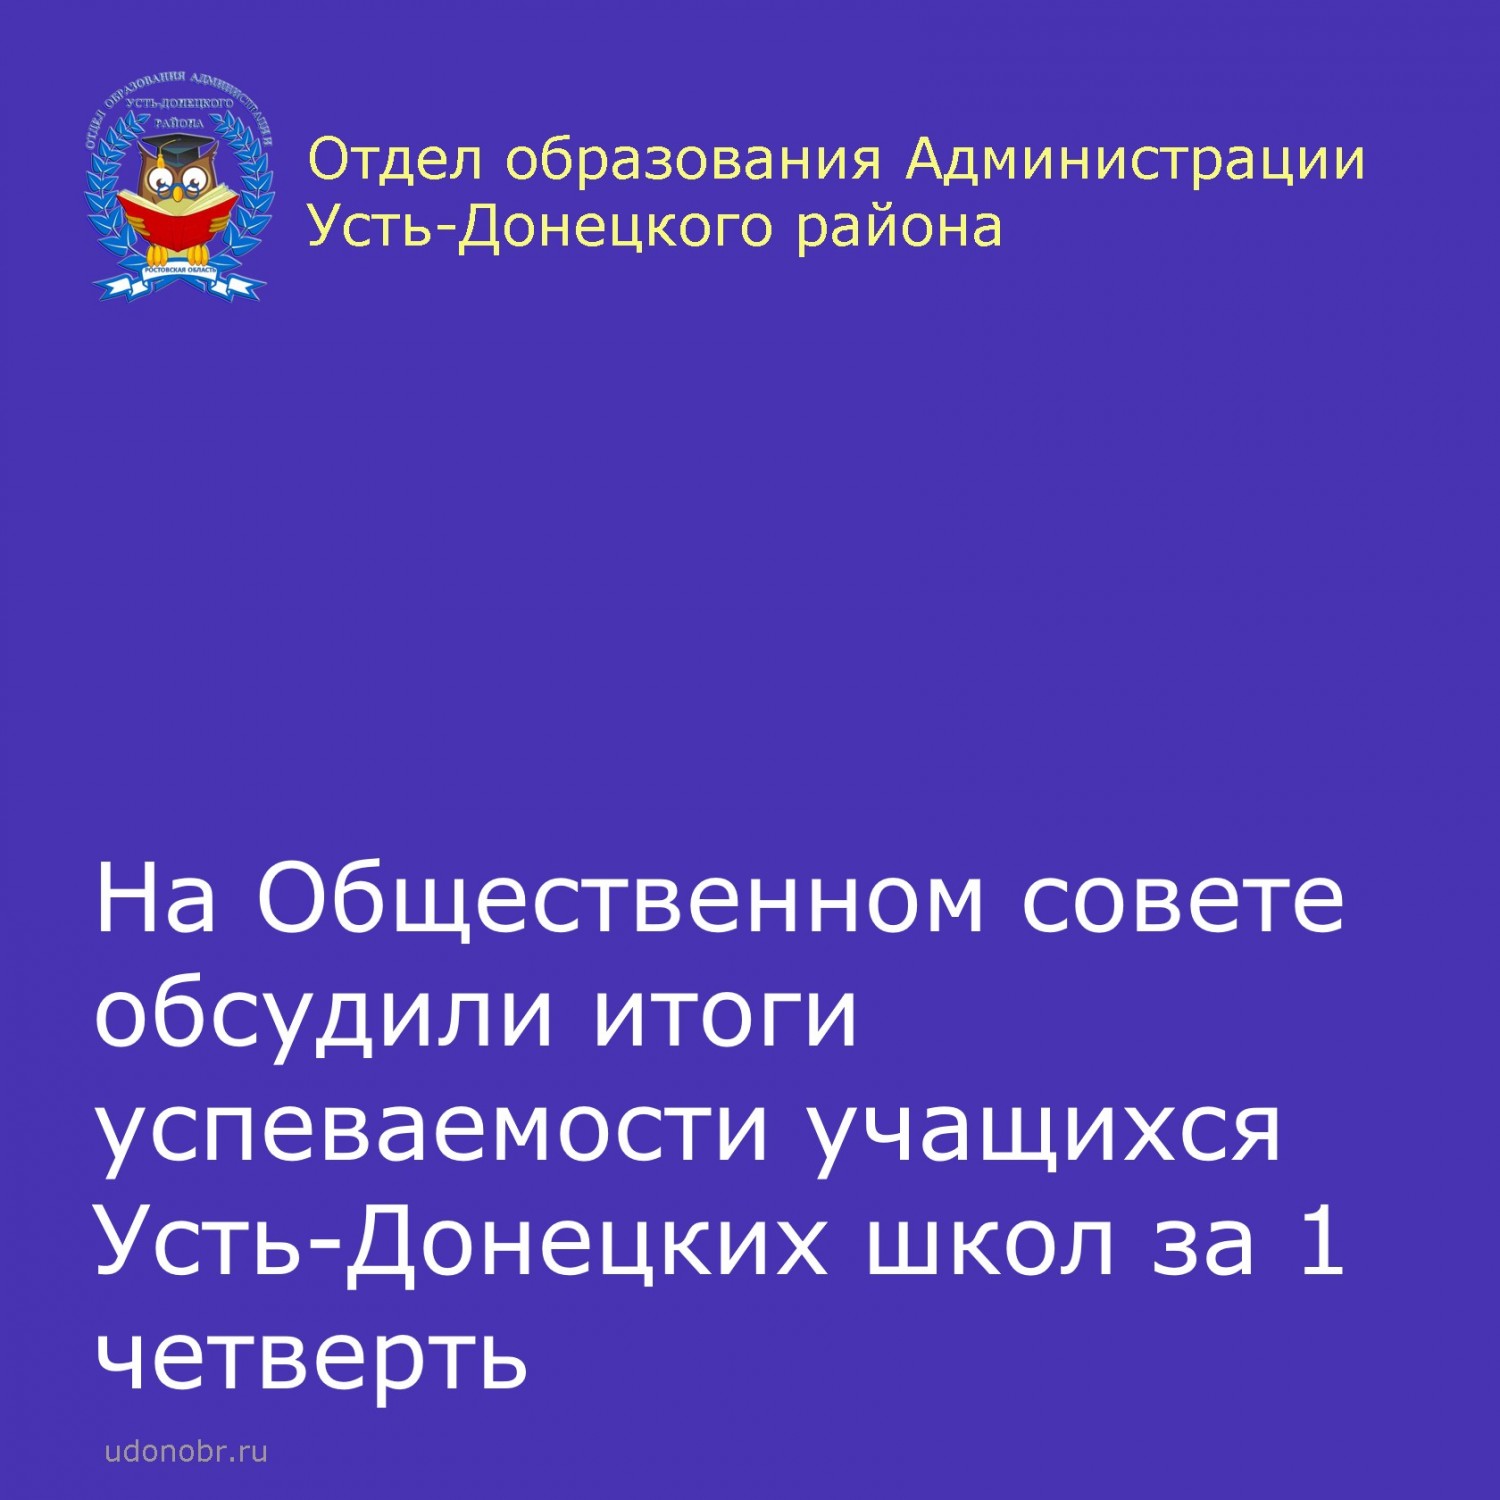 На Общественном совете обсудили итоги успеваемости учащихся Усть-Донецких школ за 1 четверть